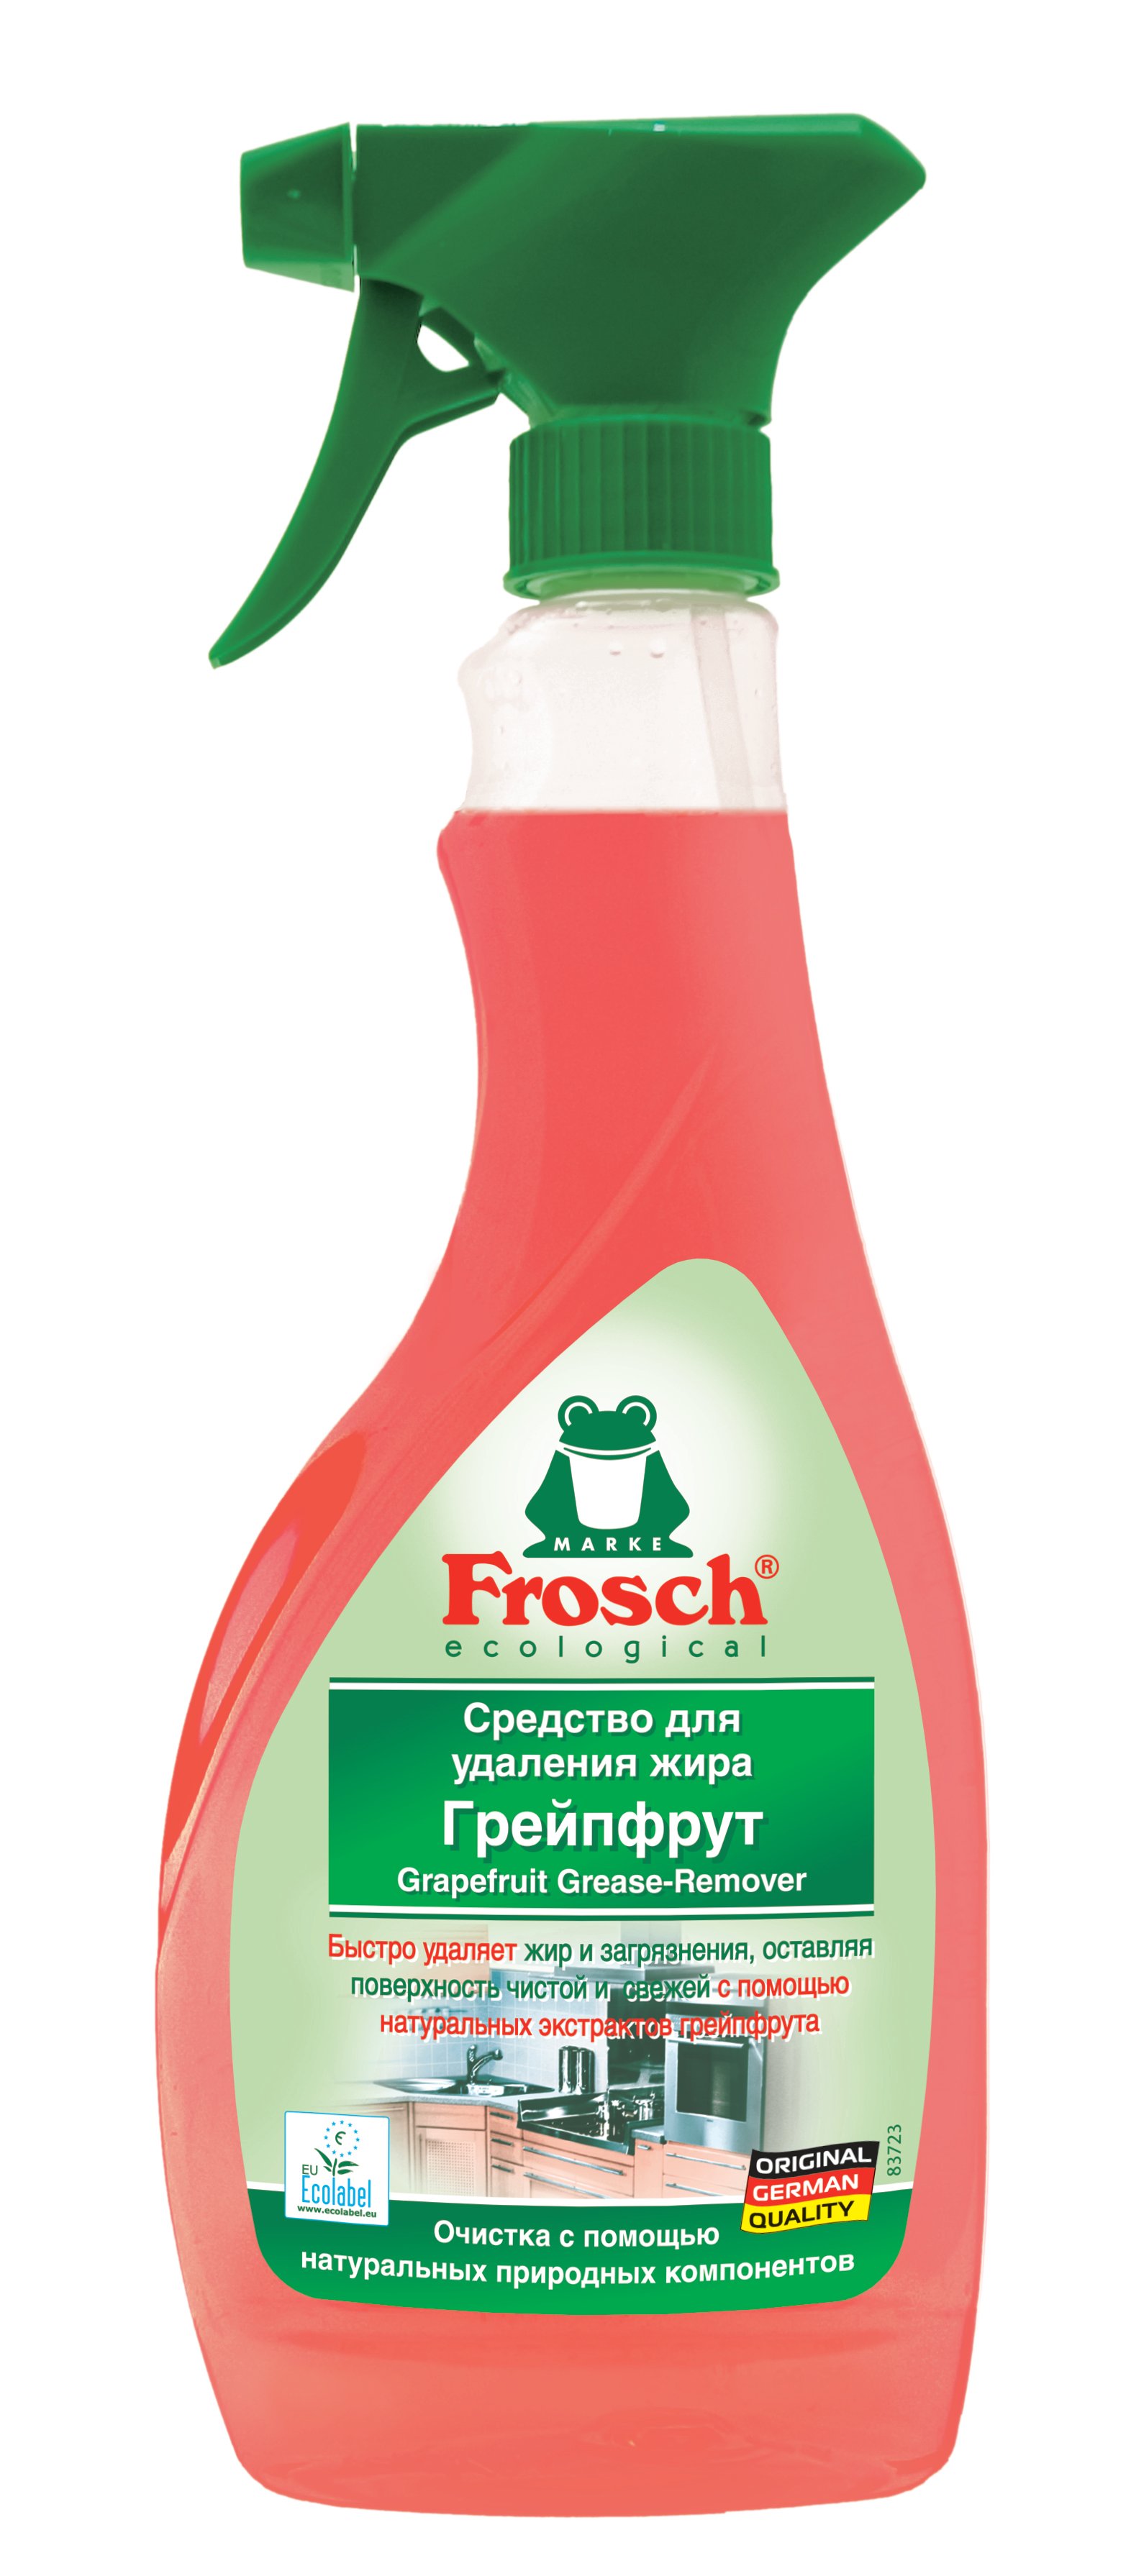 Універсальний очищувач Frosch Грейпфрут, 500 мл - фото 1